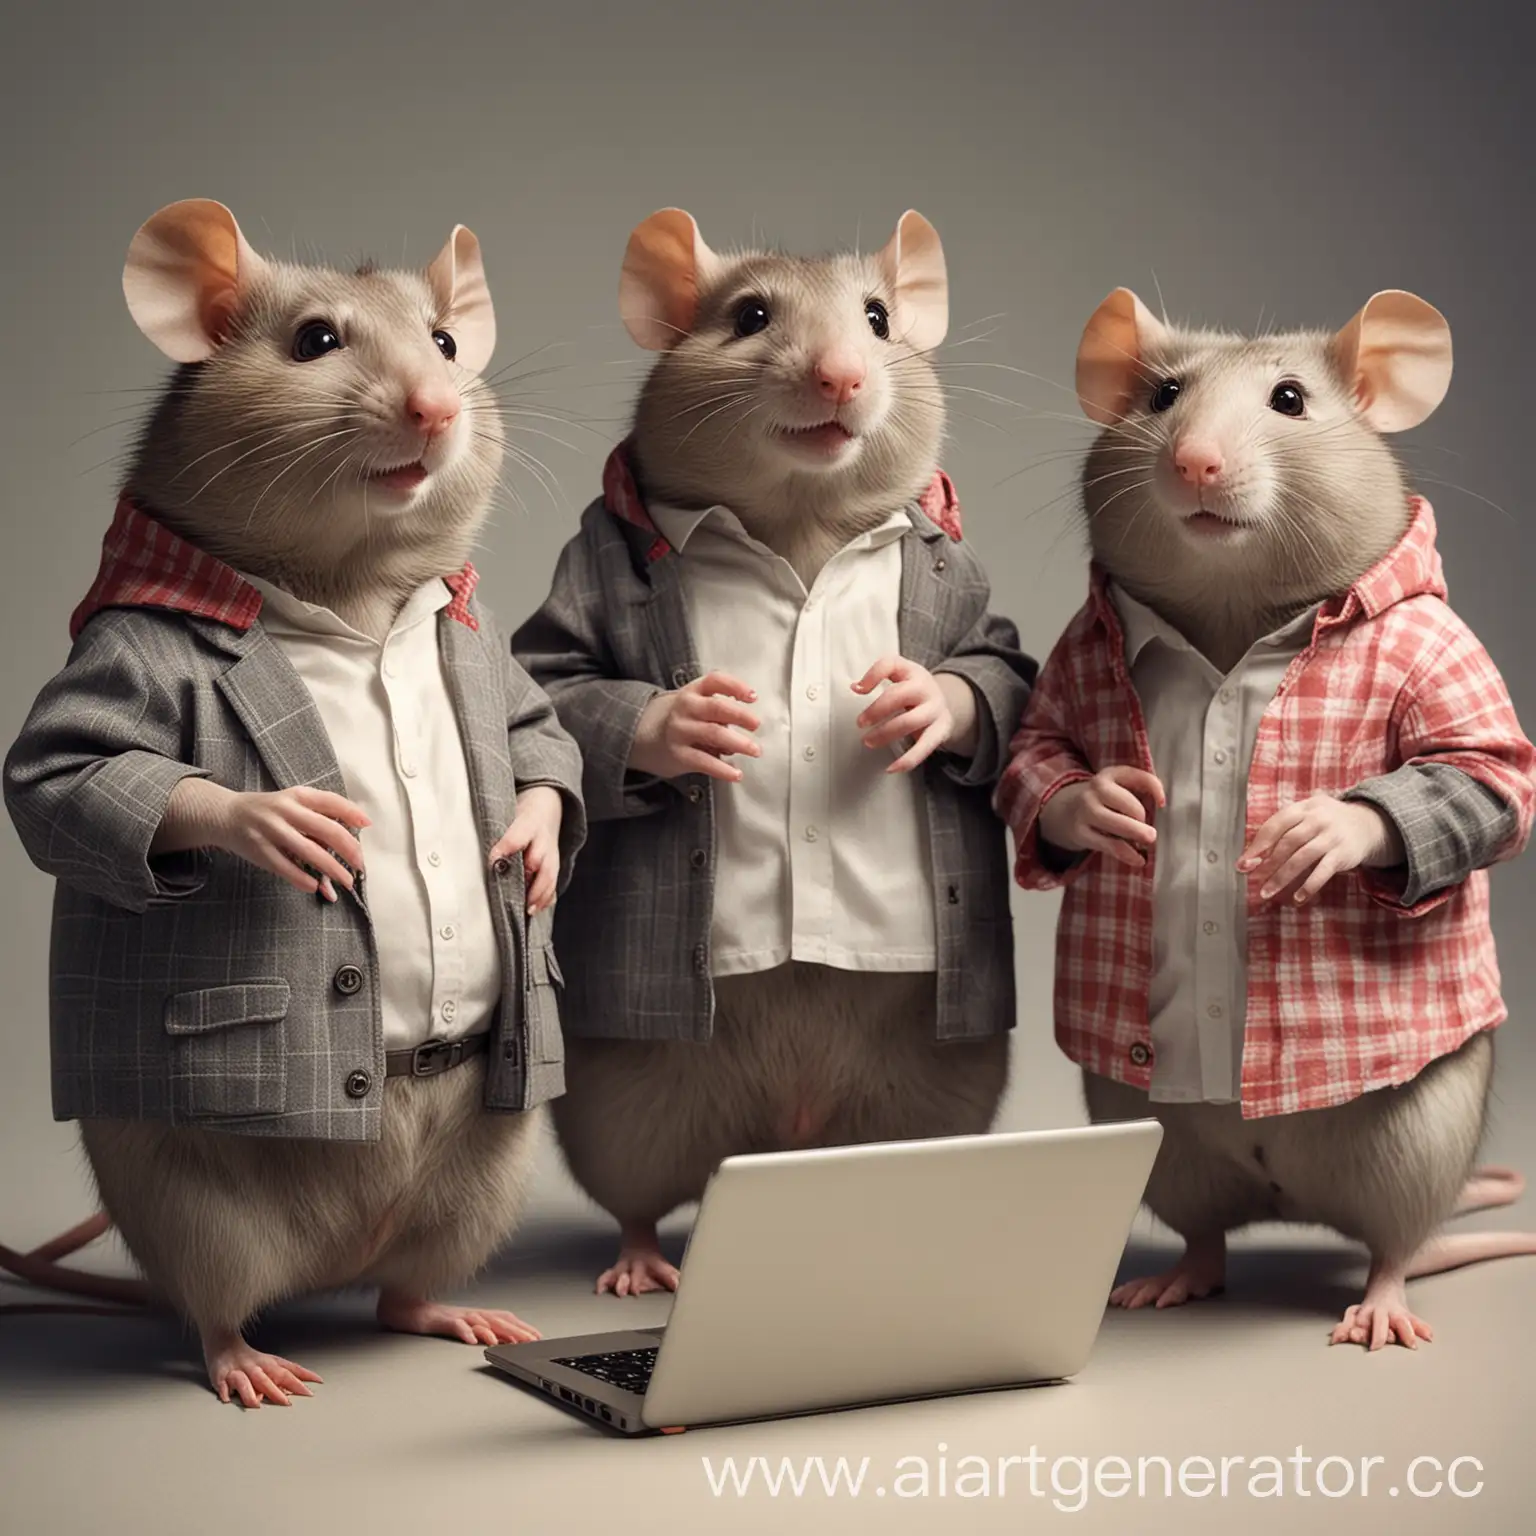 Команда молодых крыс работает разработчиками и аналитиками в it компании. Они одеваются как люди. Всего их 7. 3 мальчика, один из них толстый. И 4 девочки.